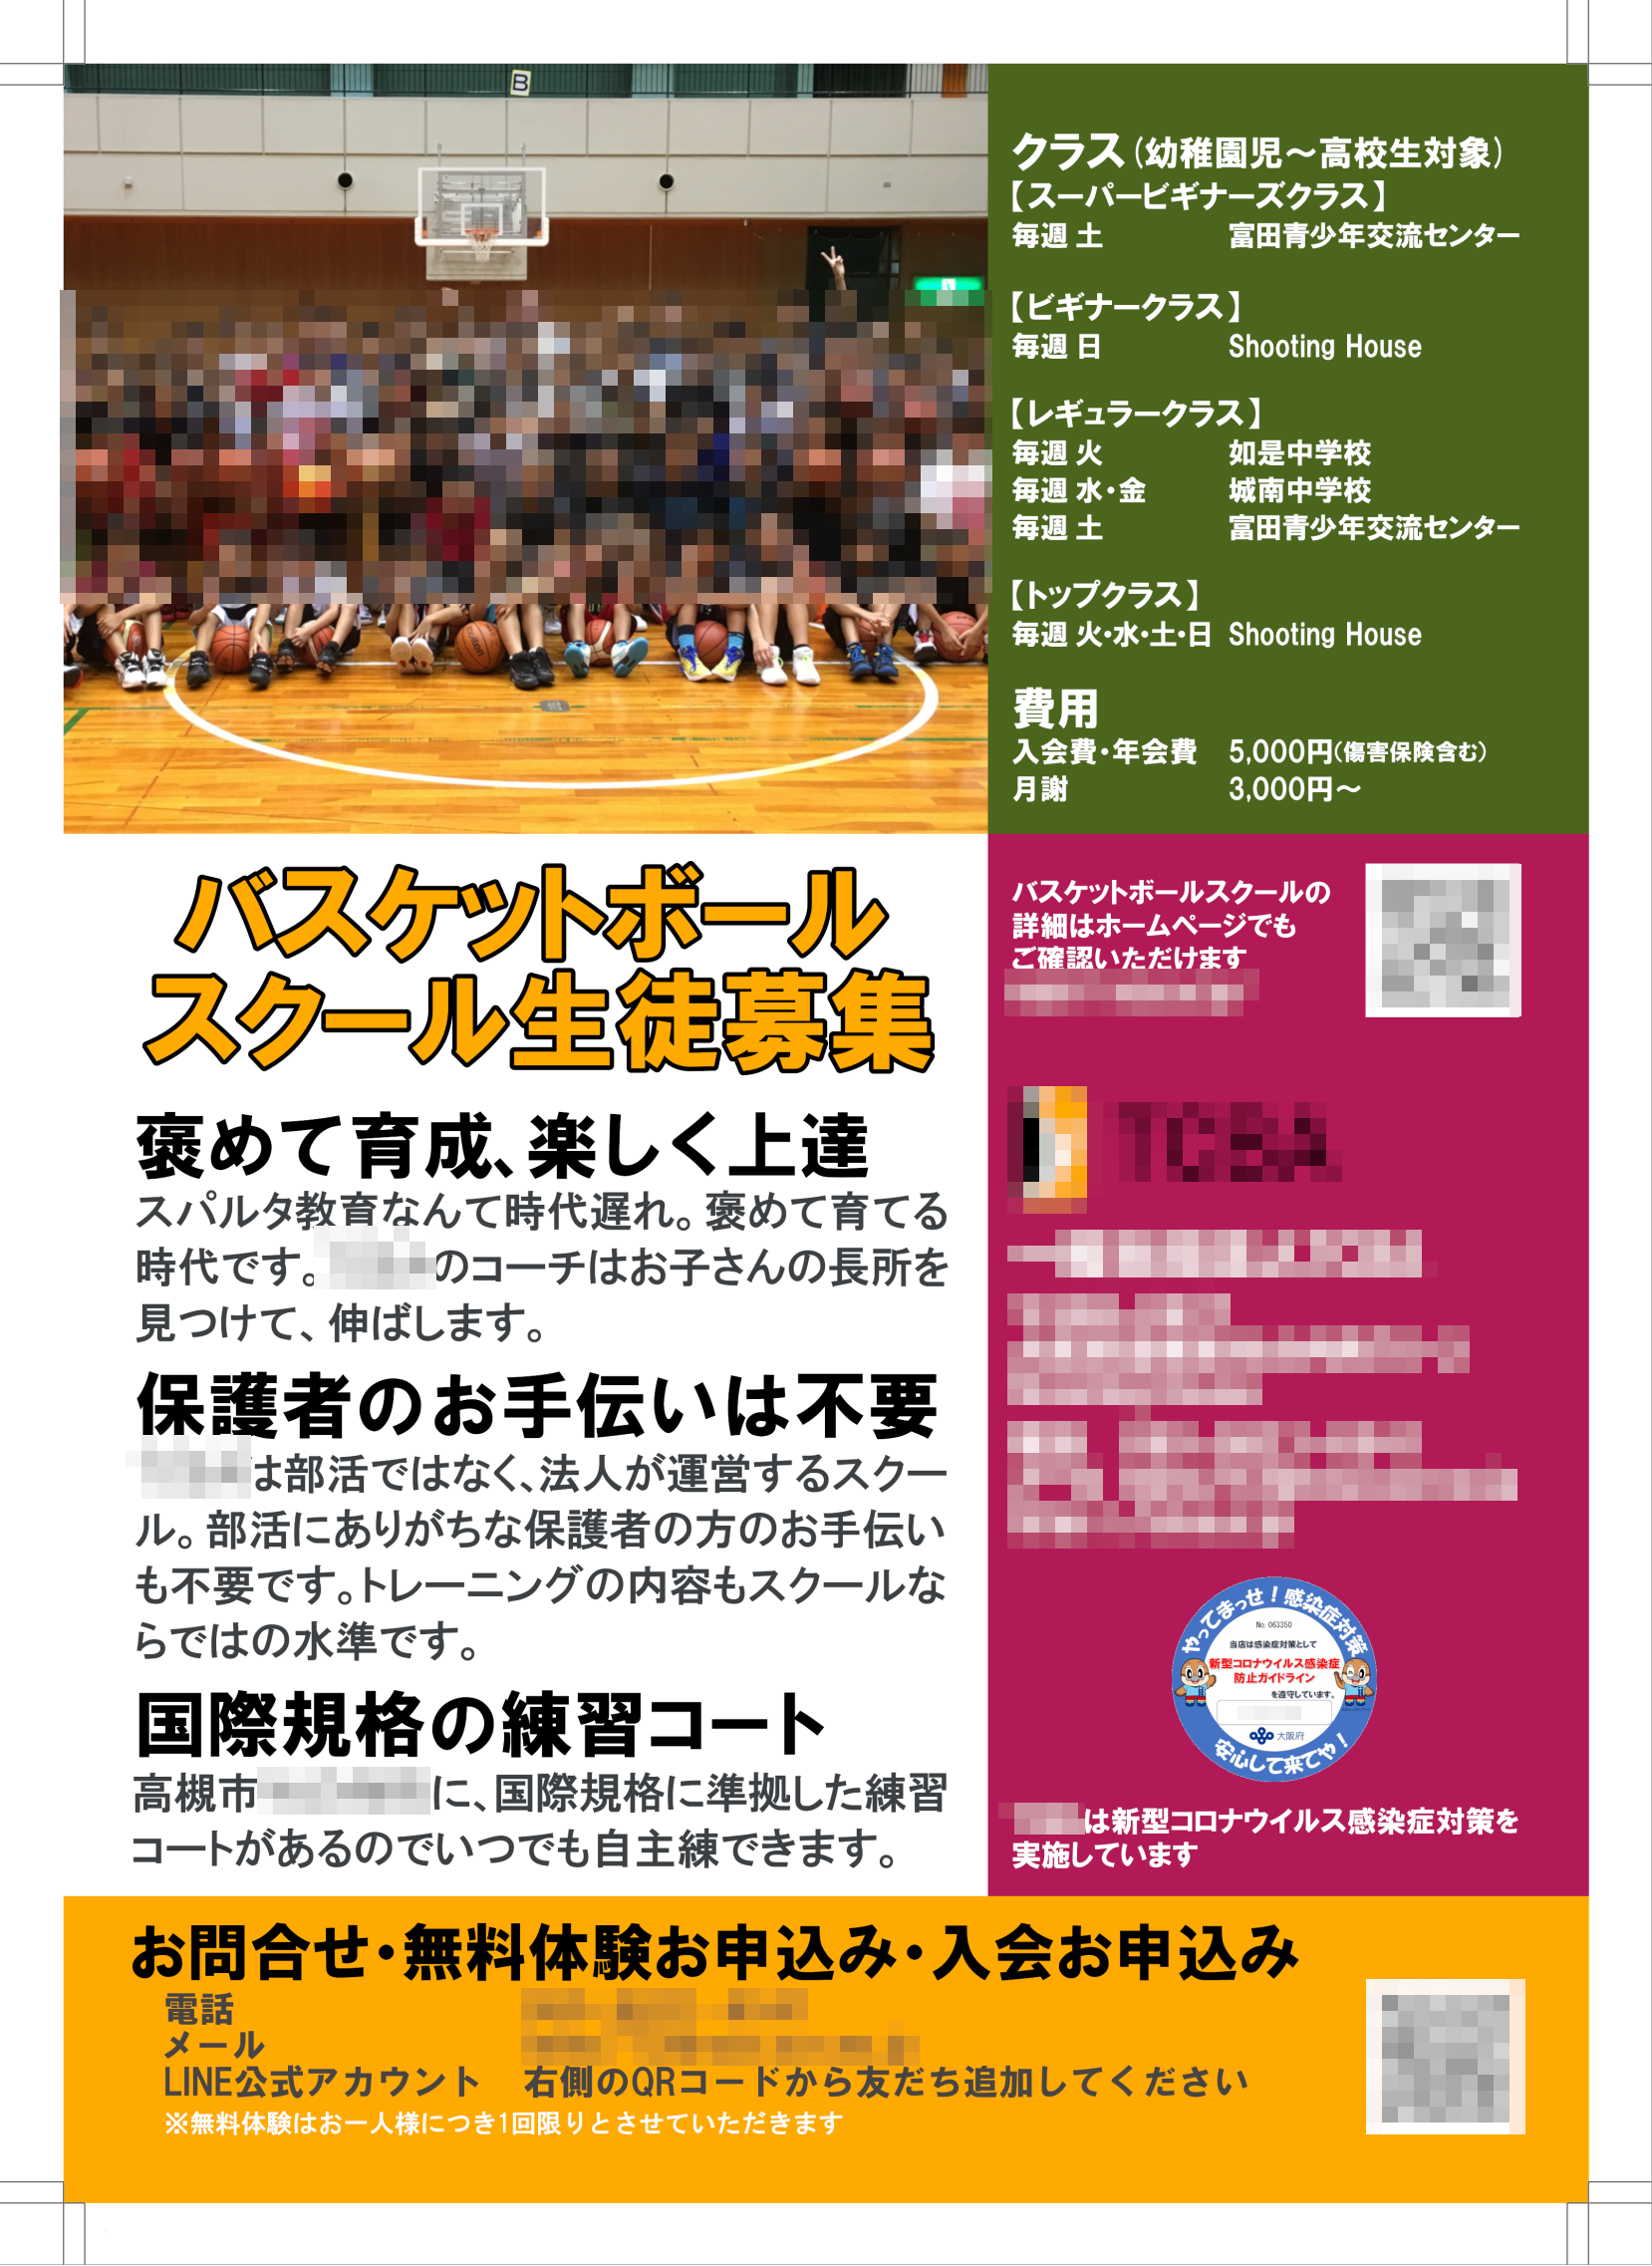 茨木・高槻のホームページ制作茨木広告宣伝舎のスクール生徒募集チラシ制作事例